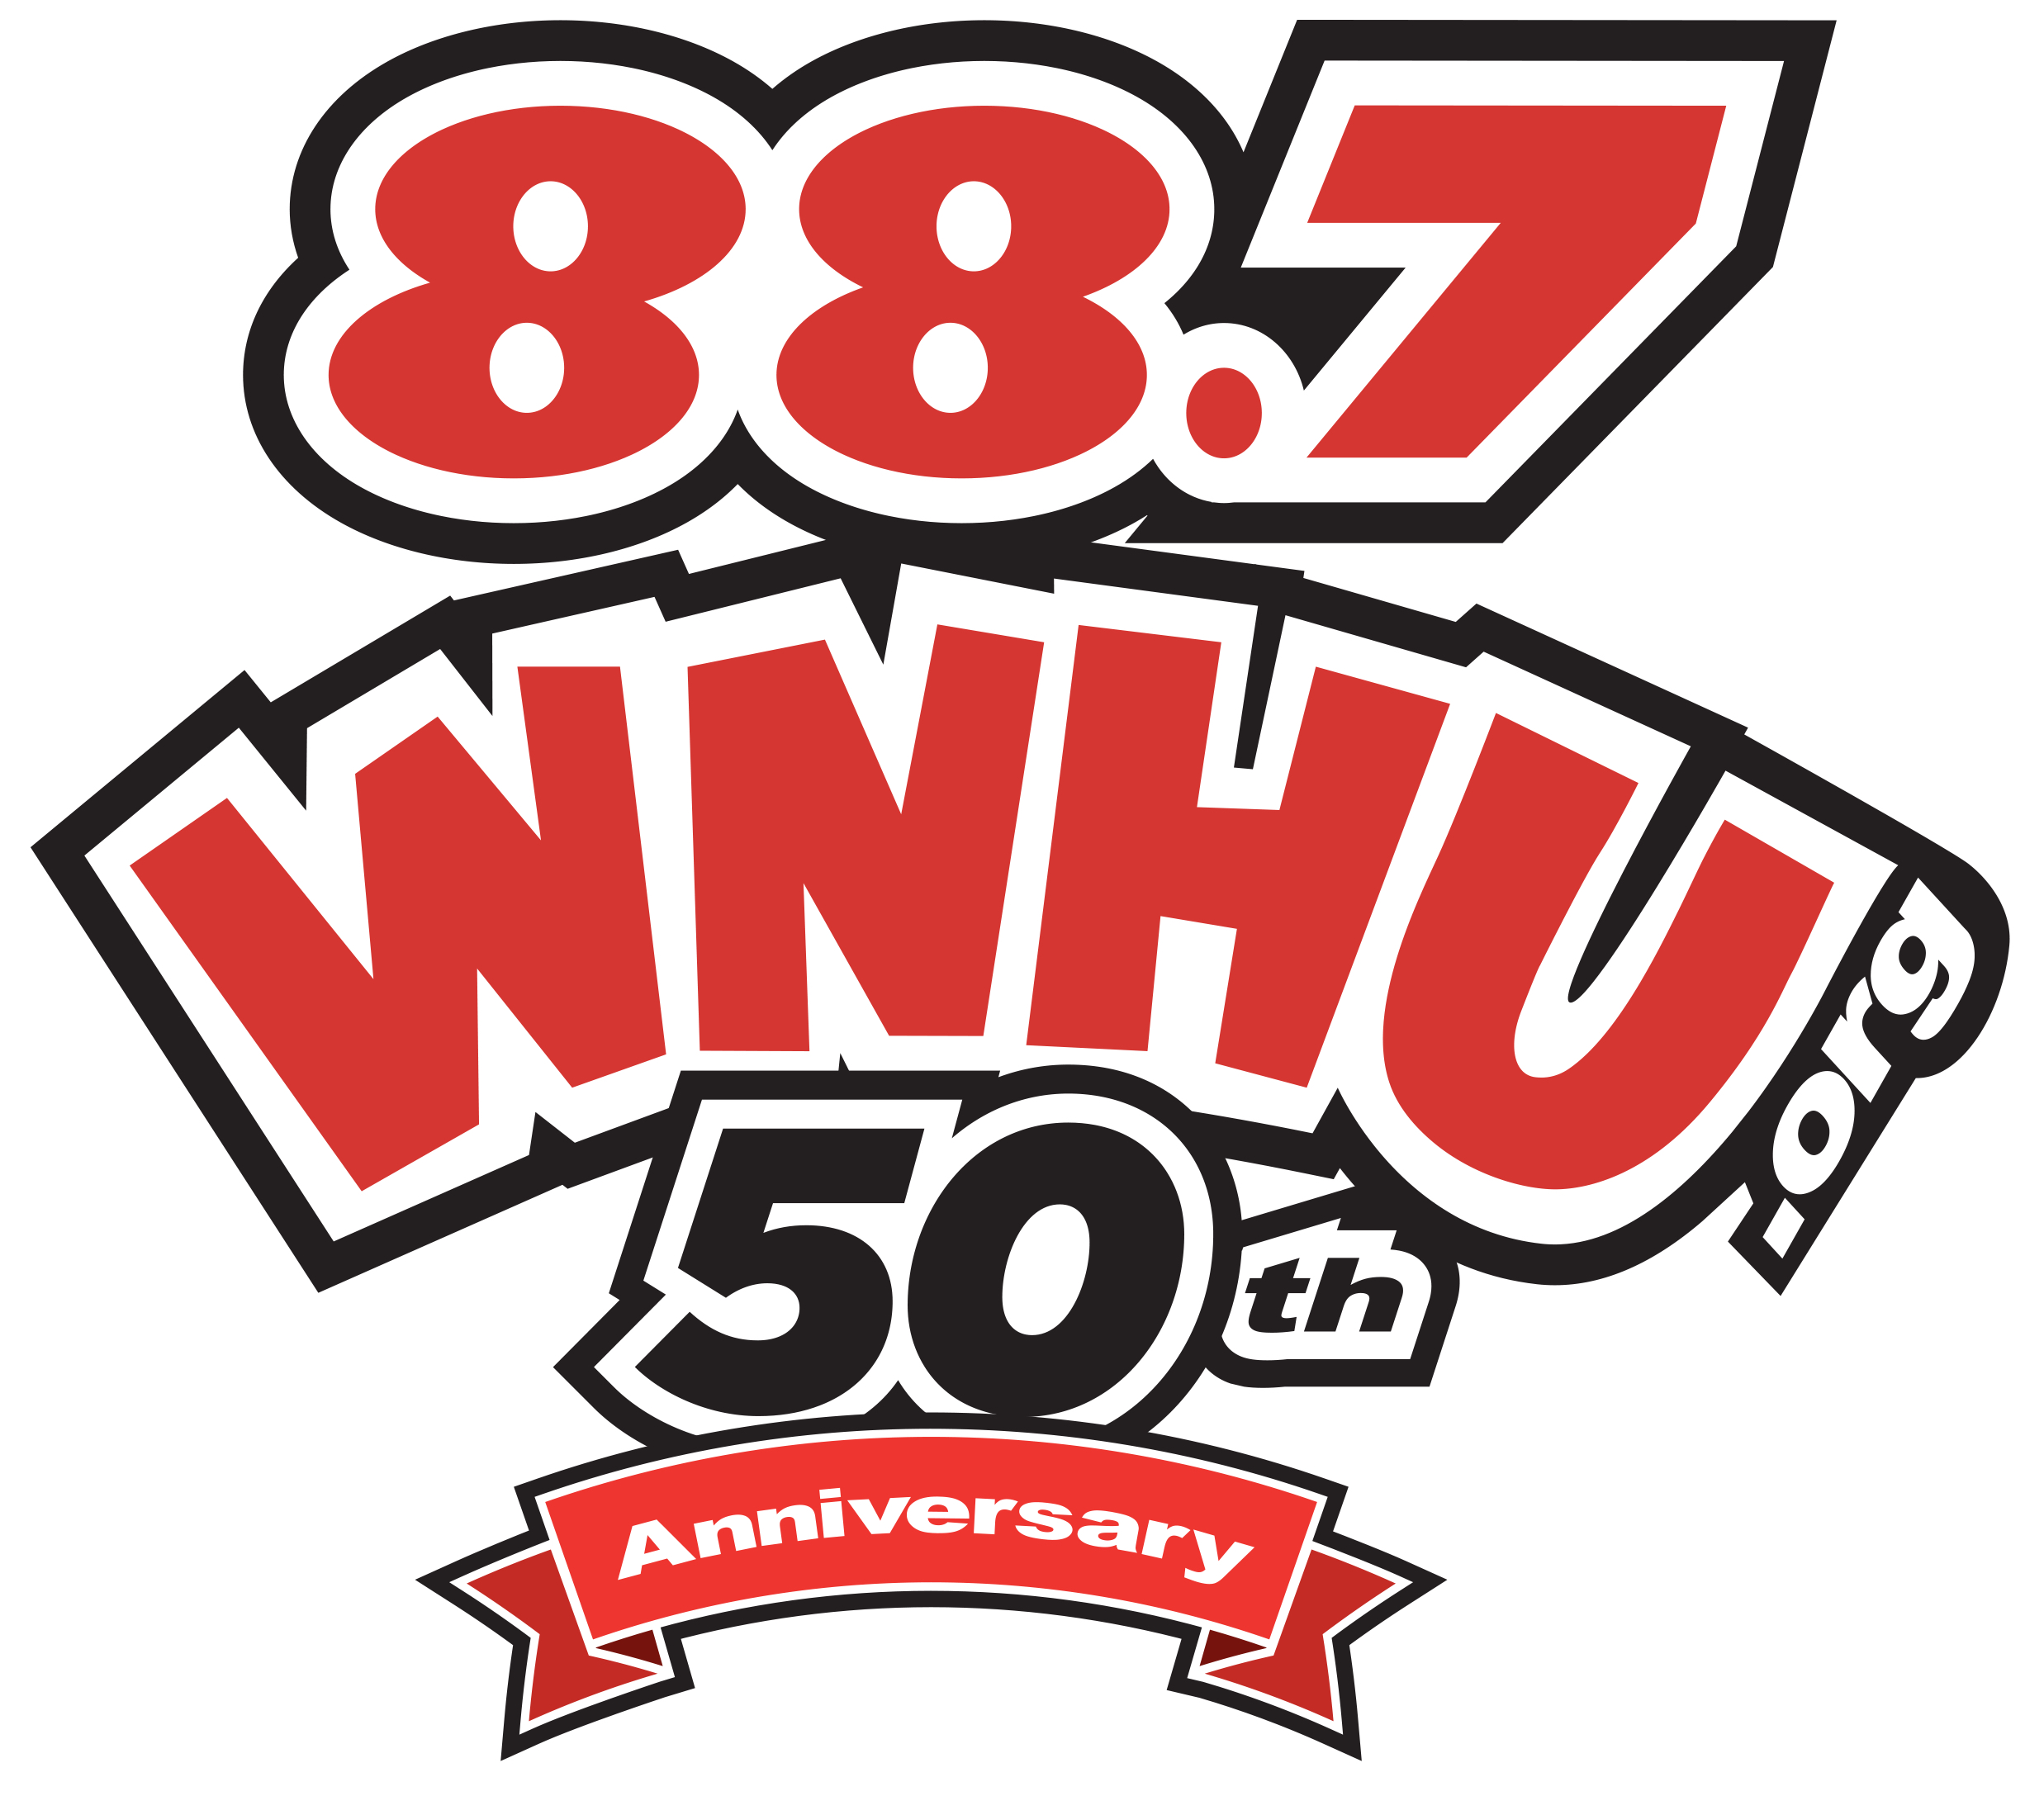 WNHU 50th Anniversary Logo